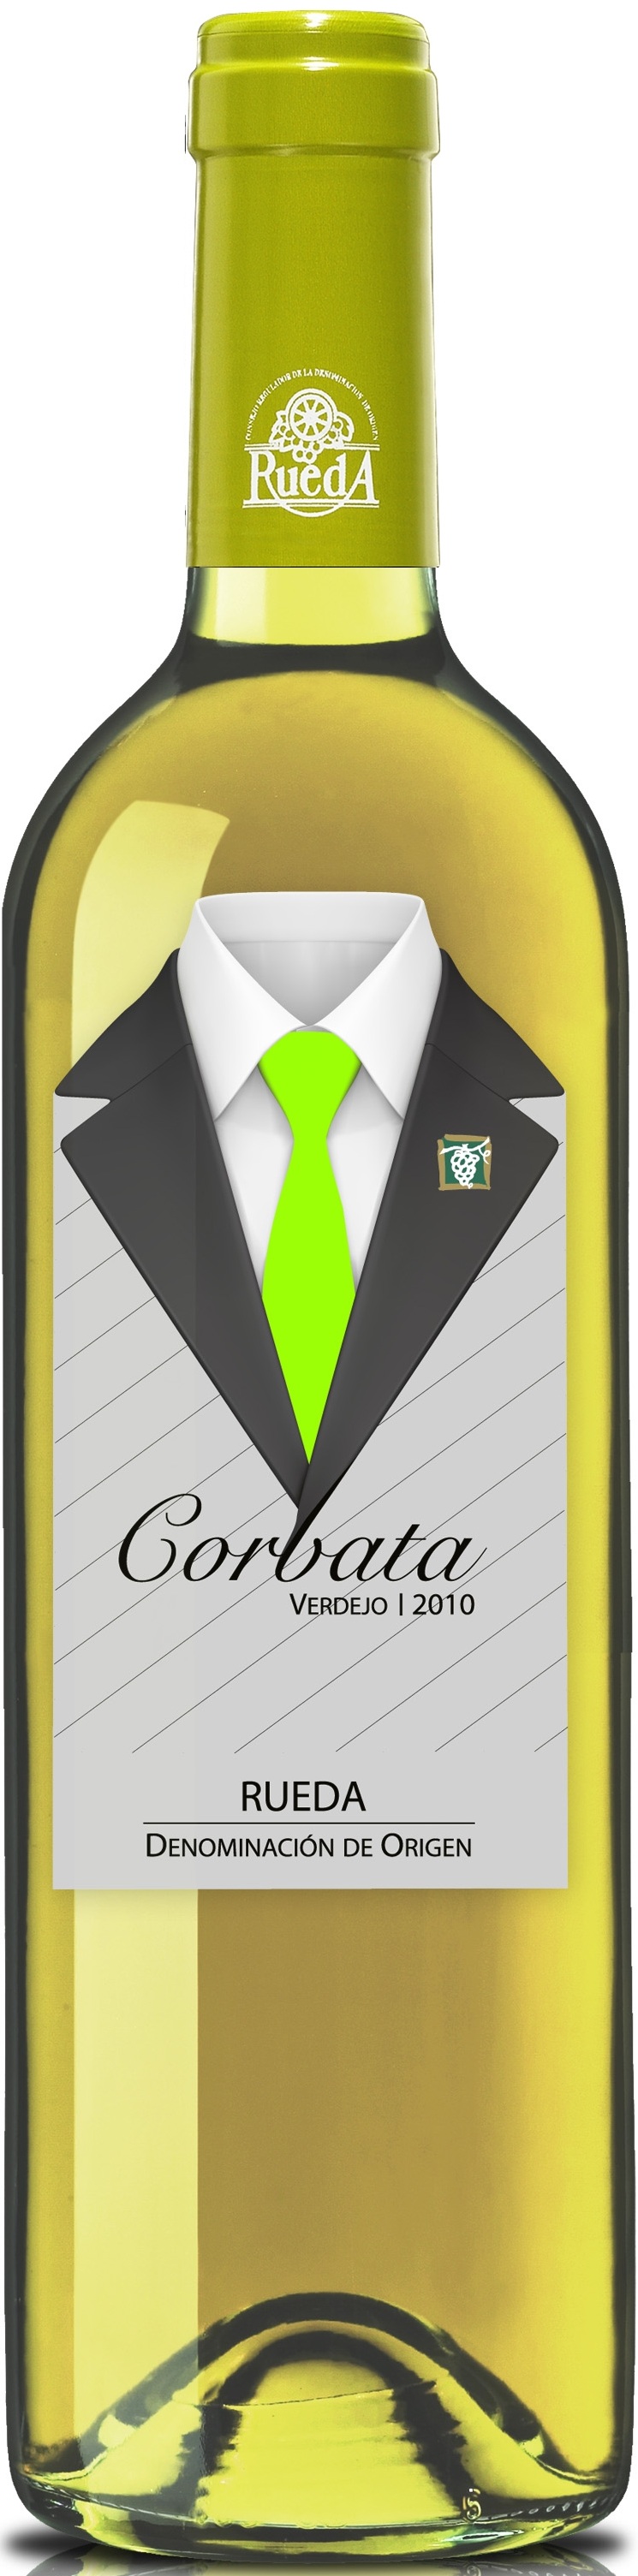 Bild von der Weinflasche Corbata Verdejo